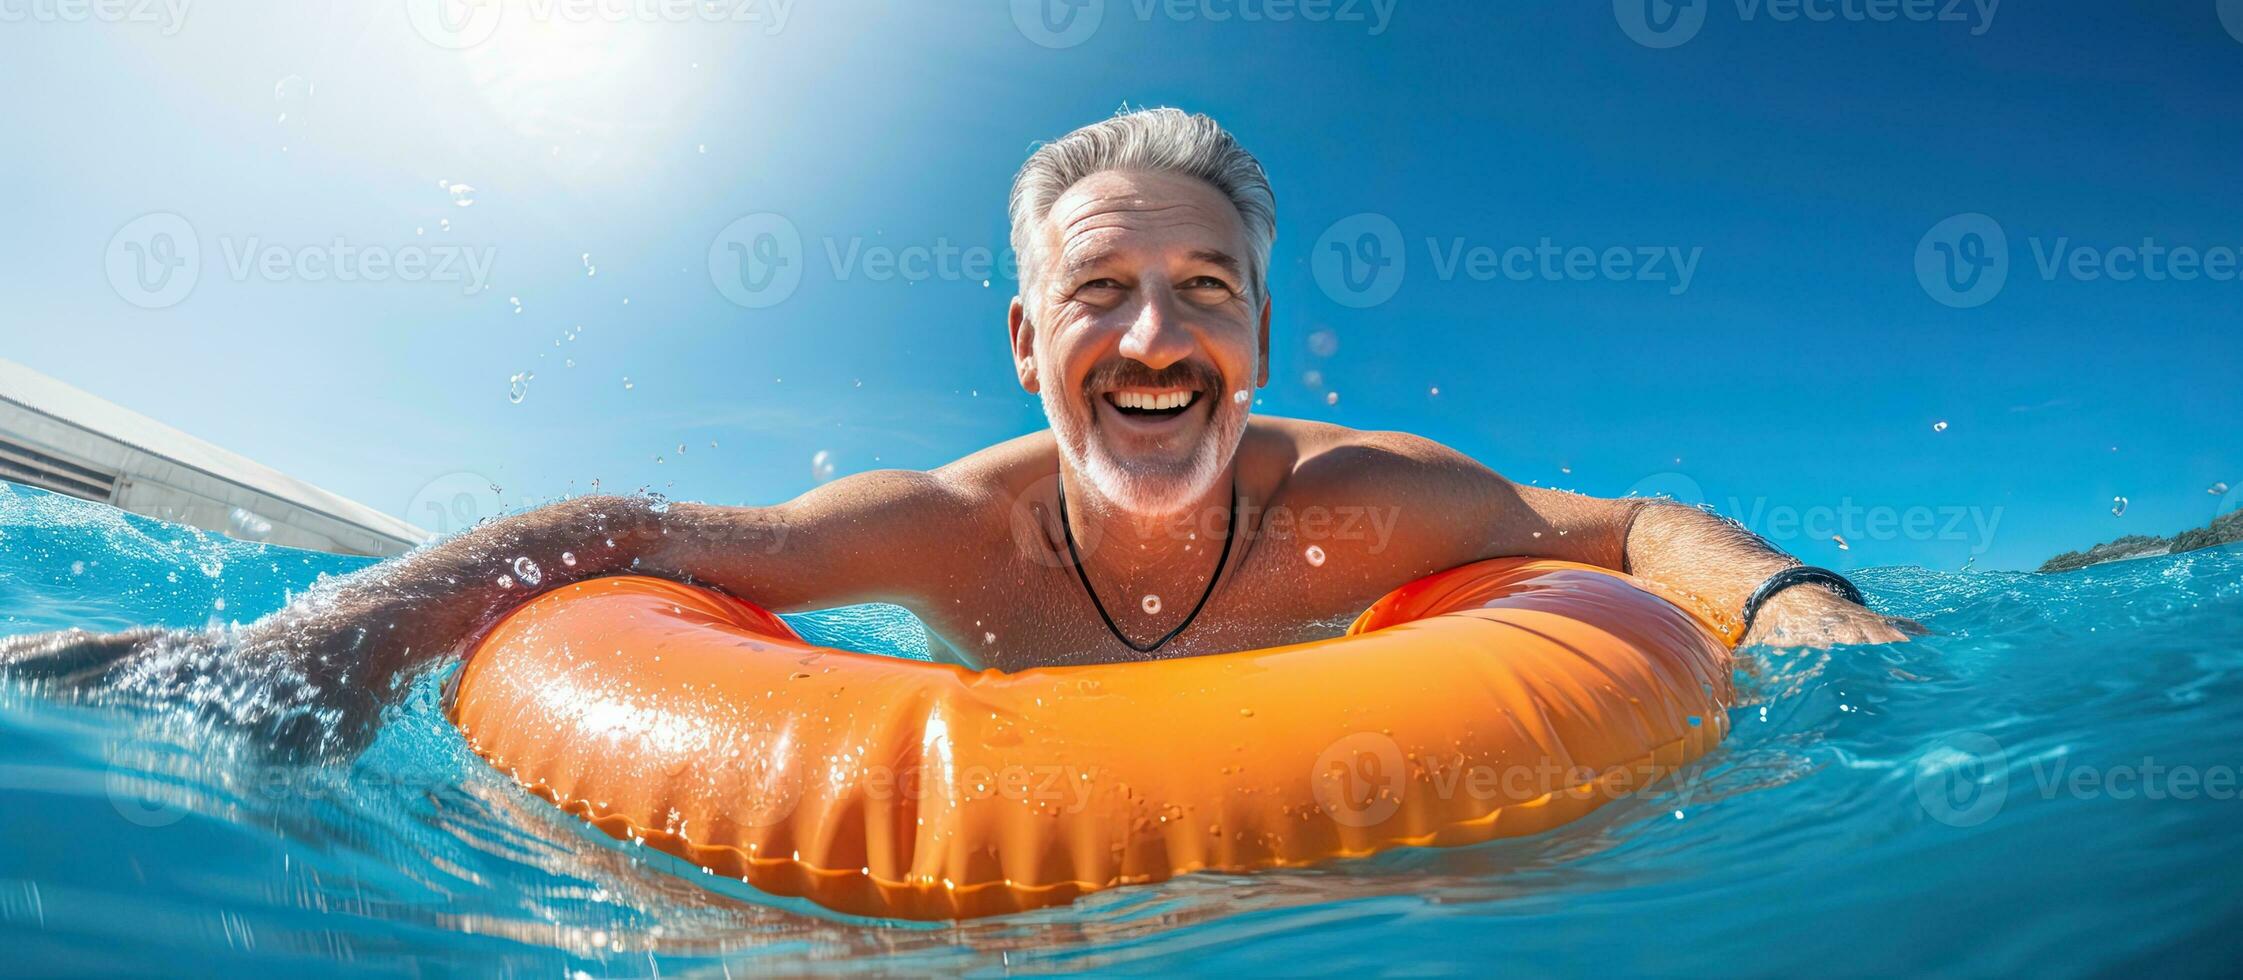 glad man i slå samman med livboj sommar rekreation förbi vatten simning slå samman konstruktion i hotell och hus foto